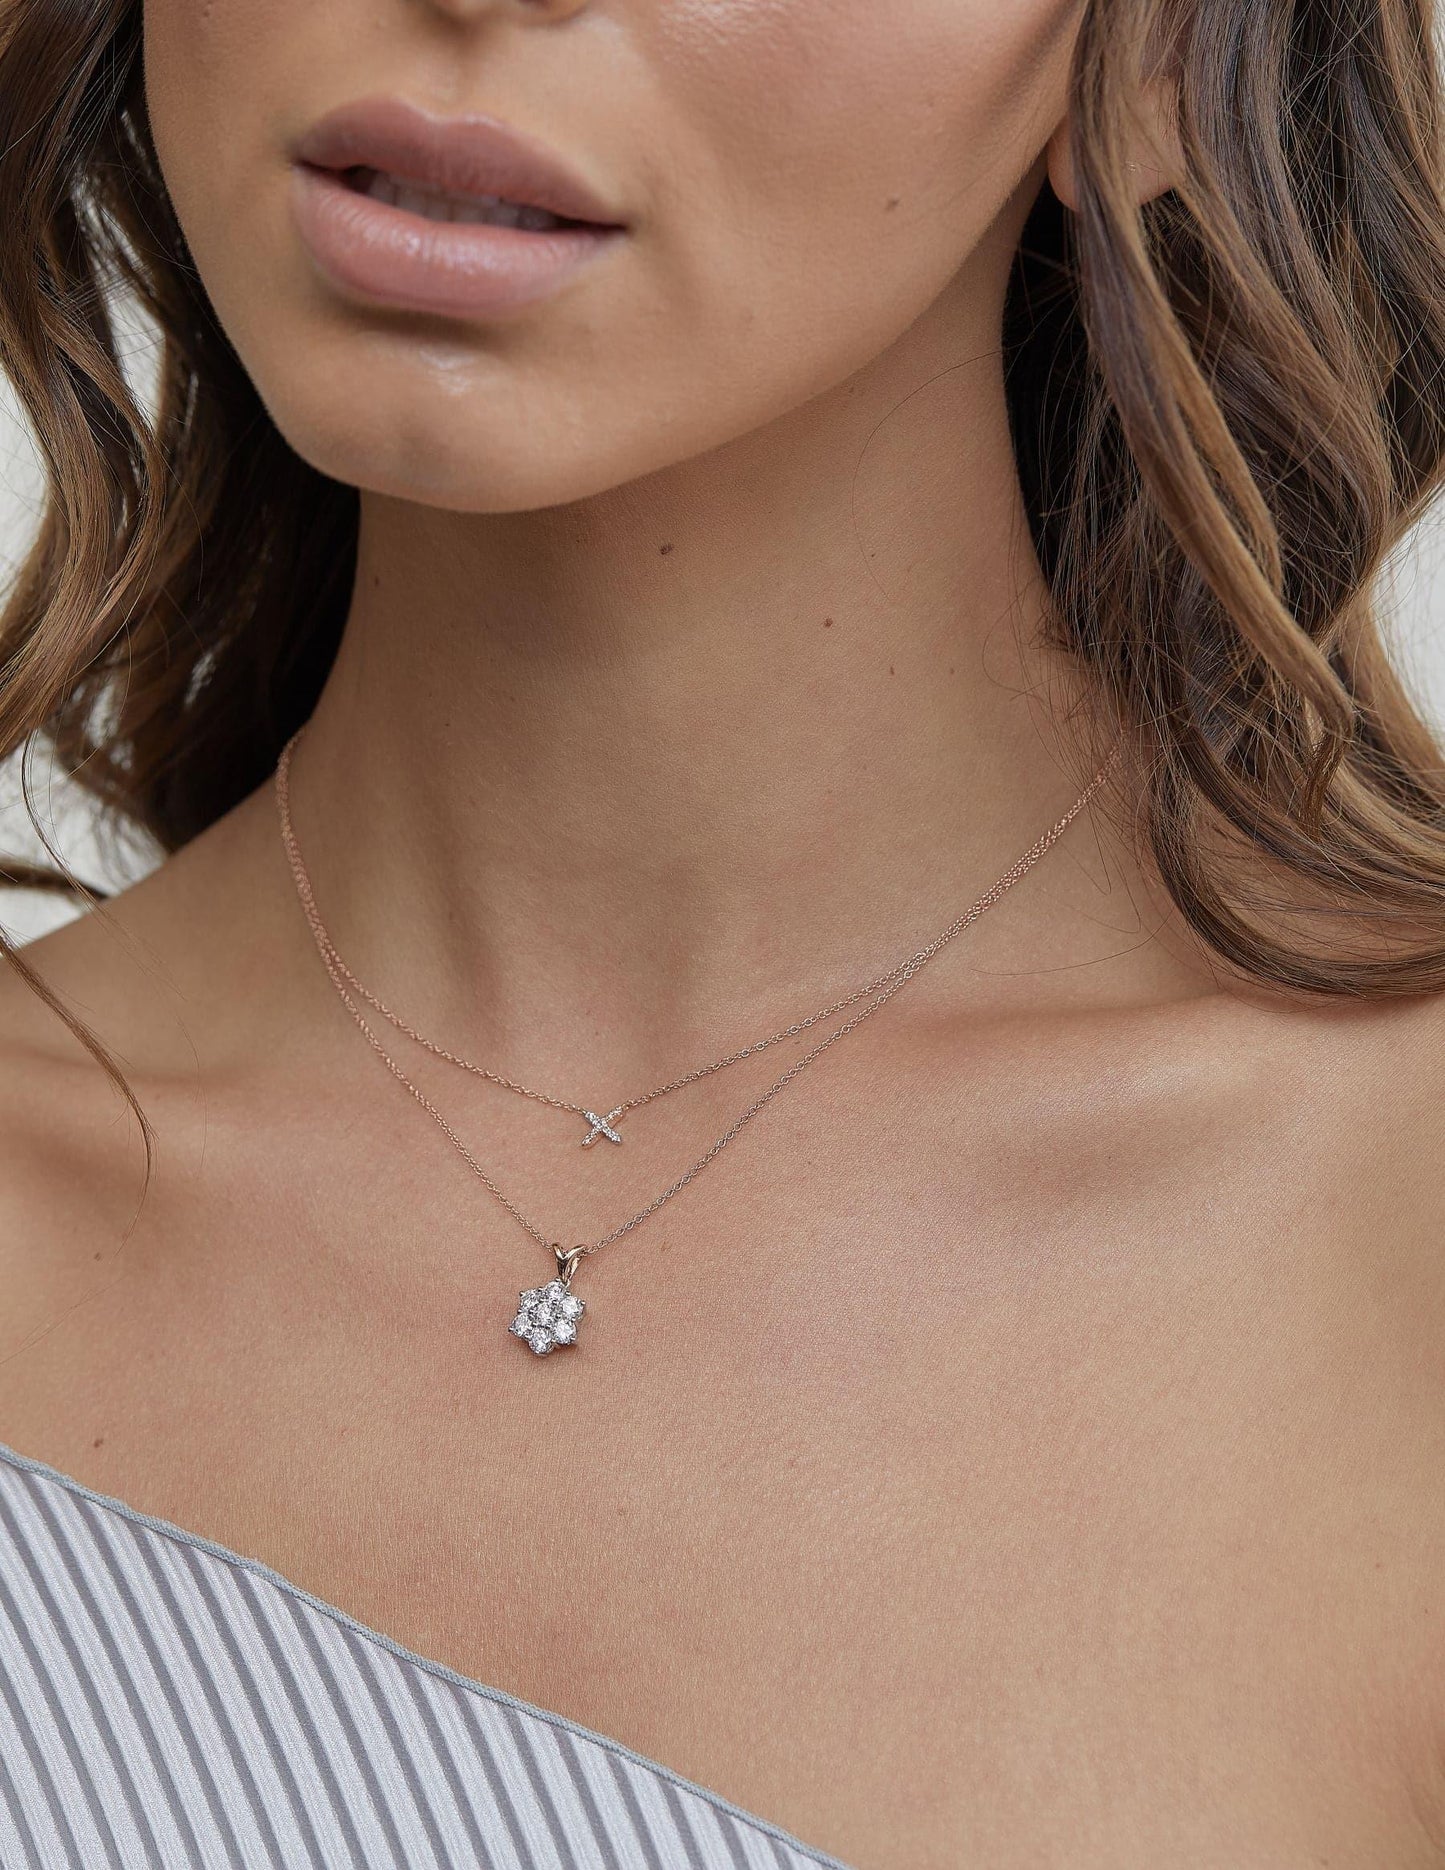 Eminence Pinks Diamond Cross Pendant - Rosendorff Diamond Jewellers